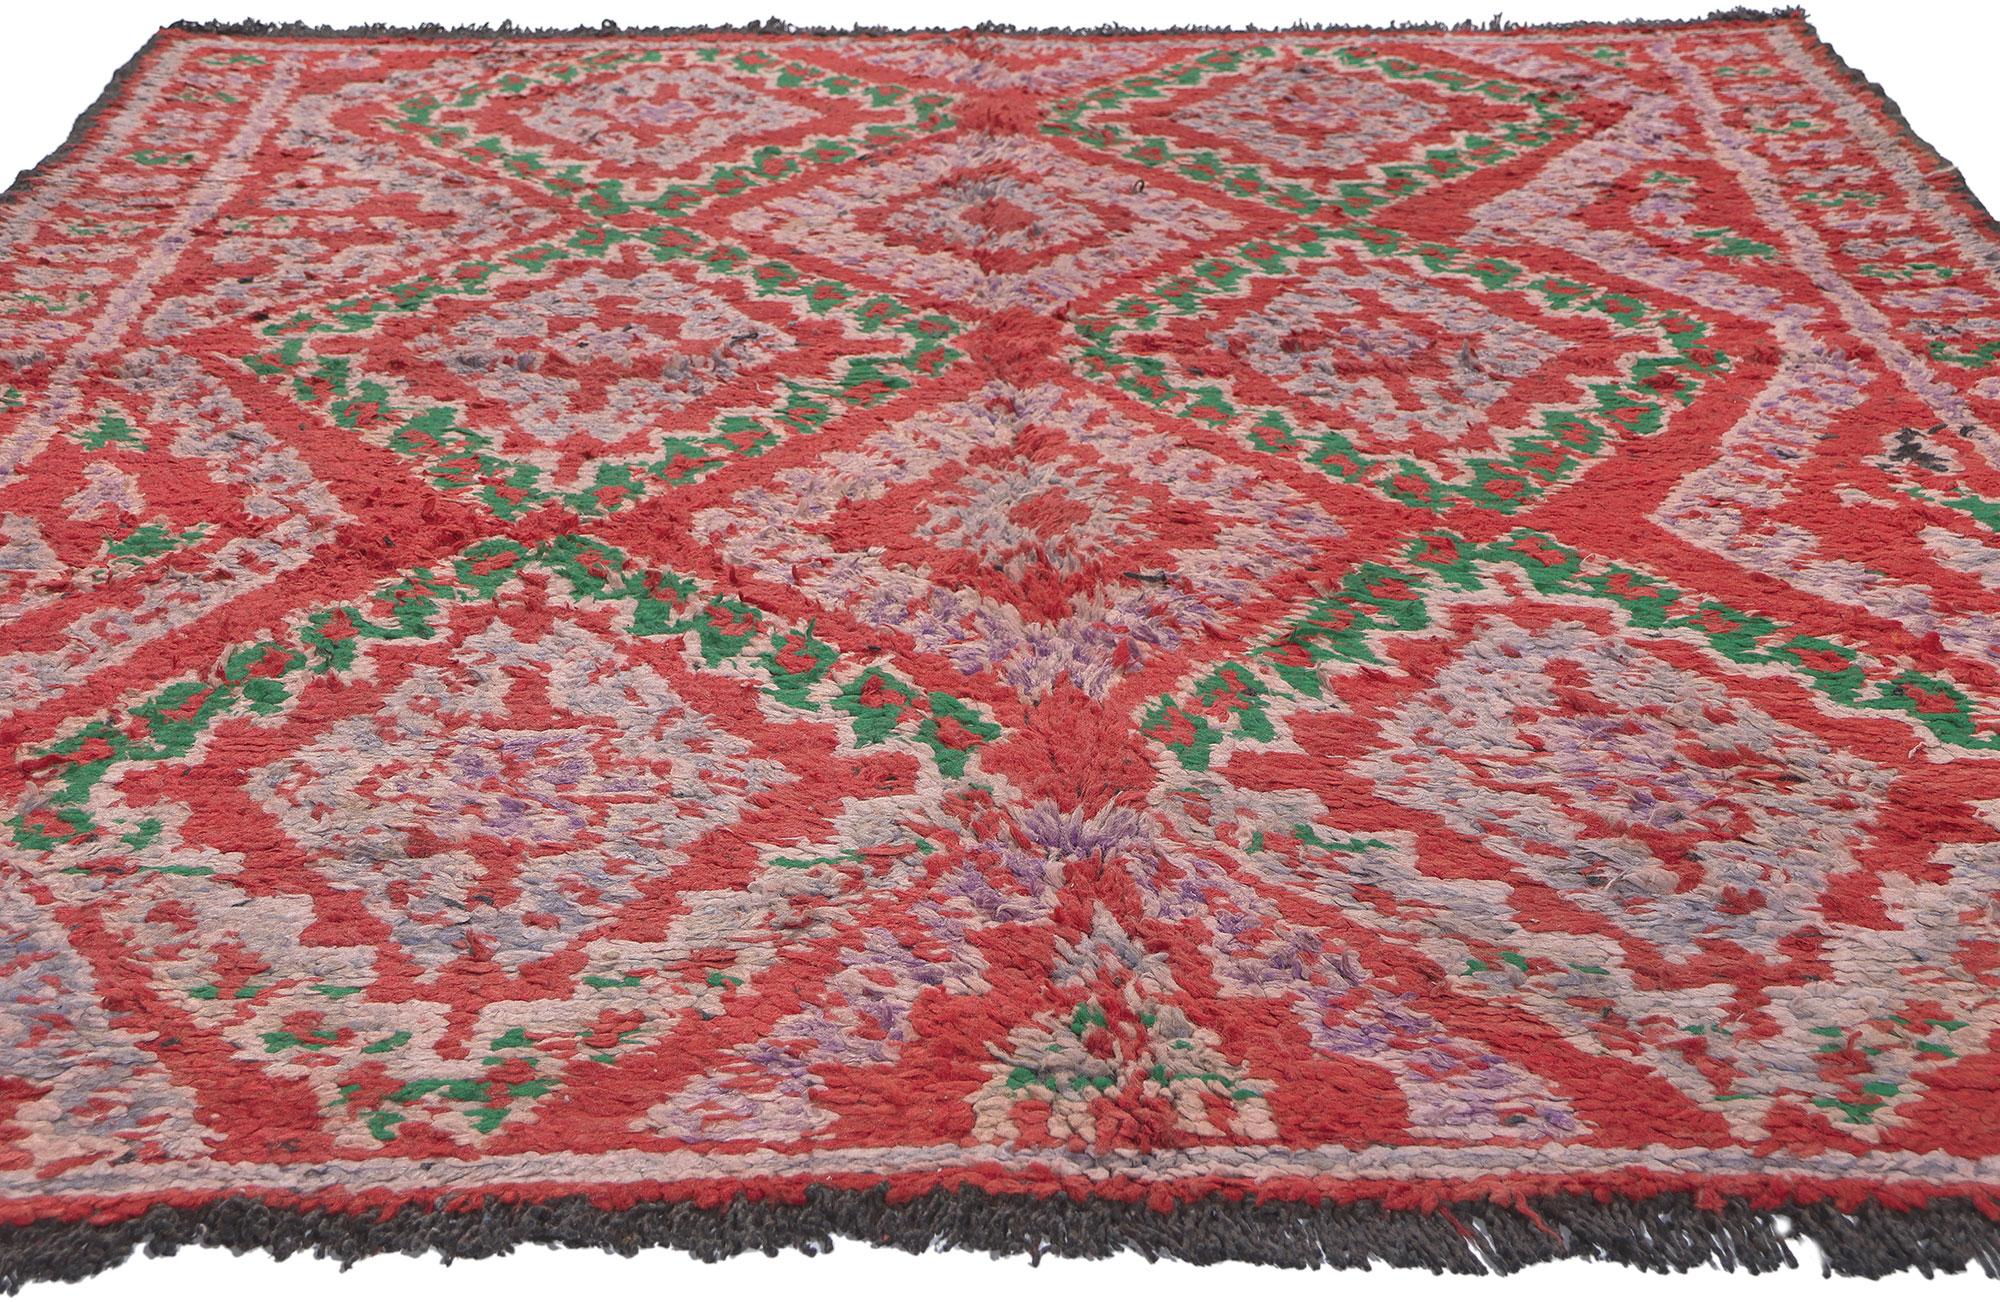 Mid-Century Modern Tapis marocain vintage rouge Talsint, le style maximaliste rencontre le charme nomade en vente